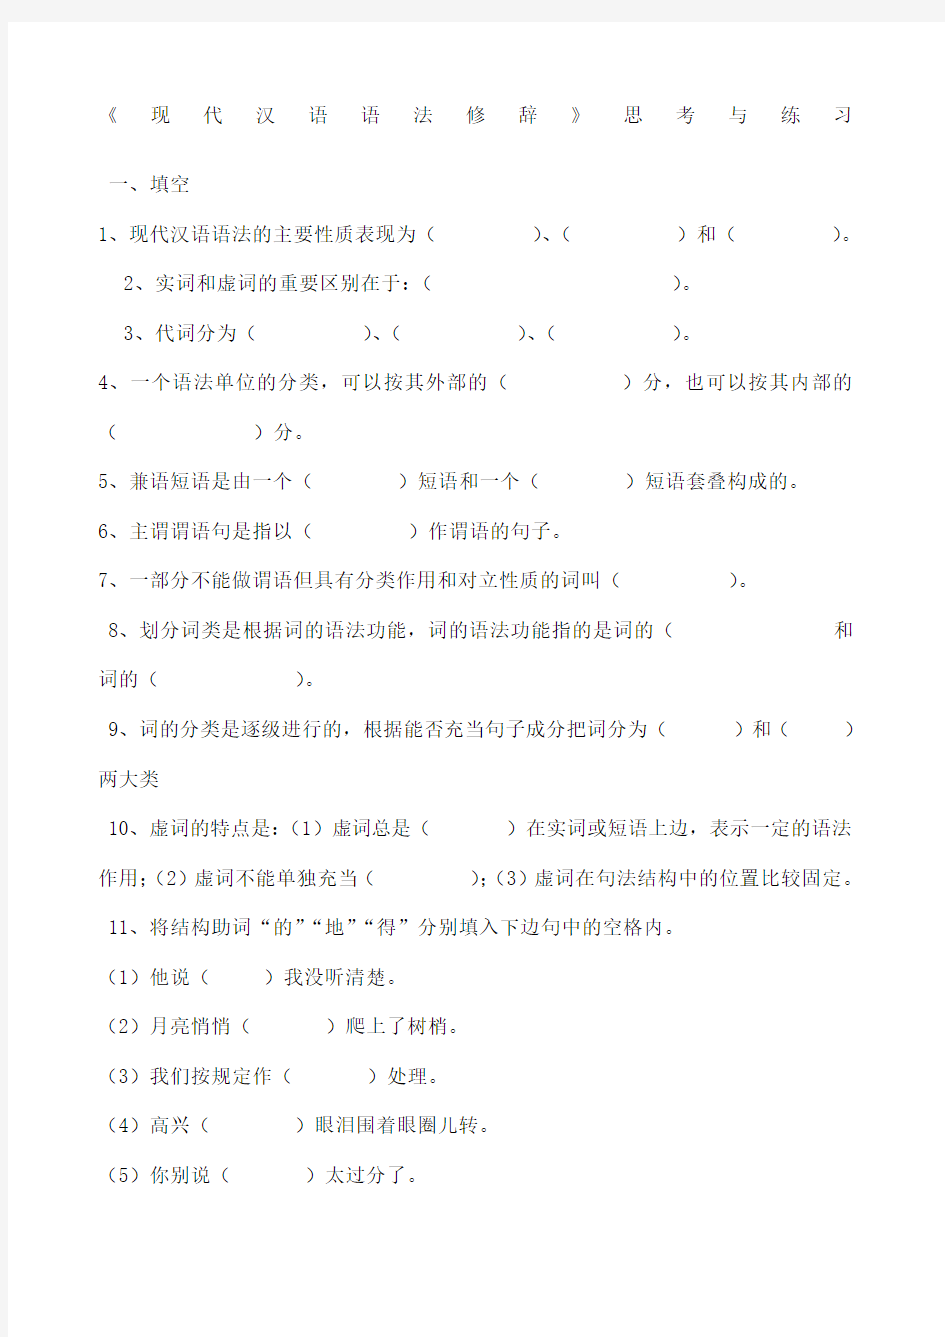 现代汉语语法修辞综合试卷有全部答案